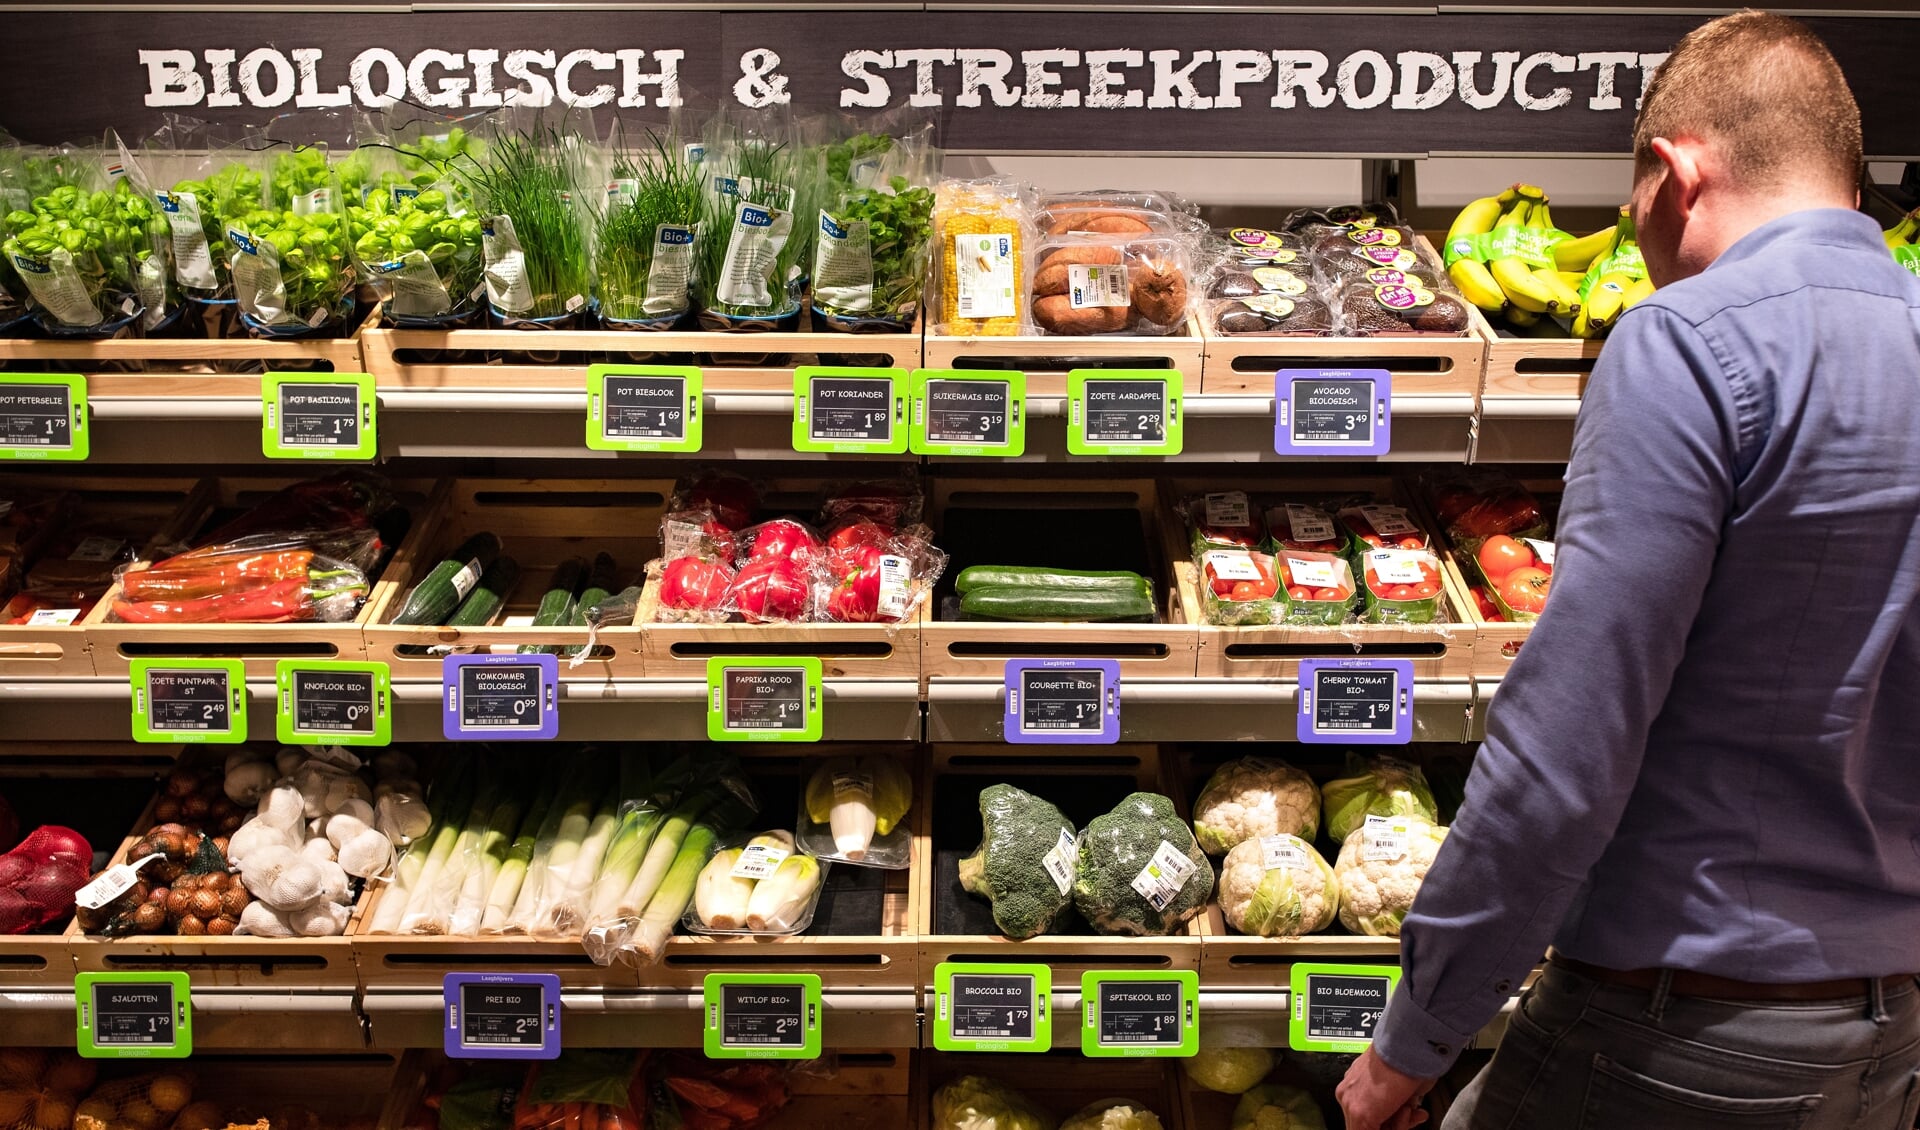 Natura verwennen Onnodig Biologische groente voor groot publiek: 'Consumenten zijn verwend met lage  prijzen' - Nederlands Dagblad. De kwaliteitskrant van christelijk Nederland